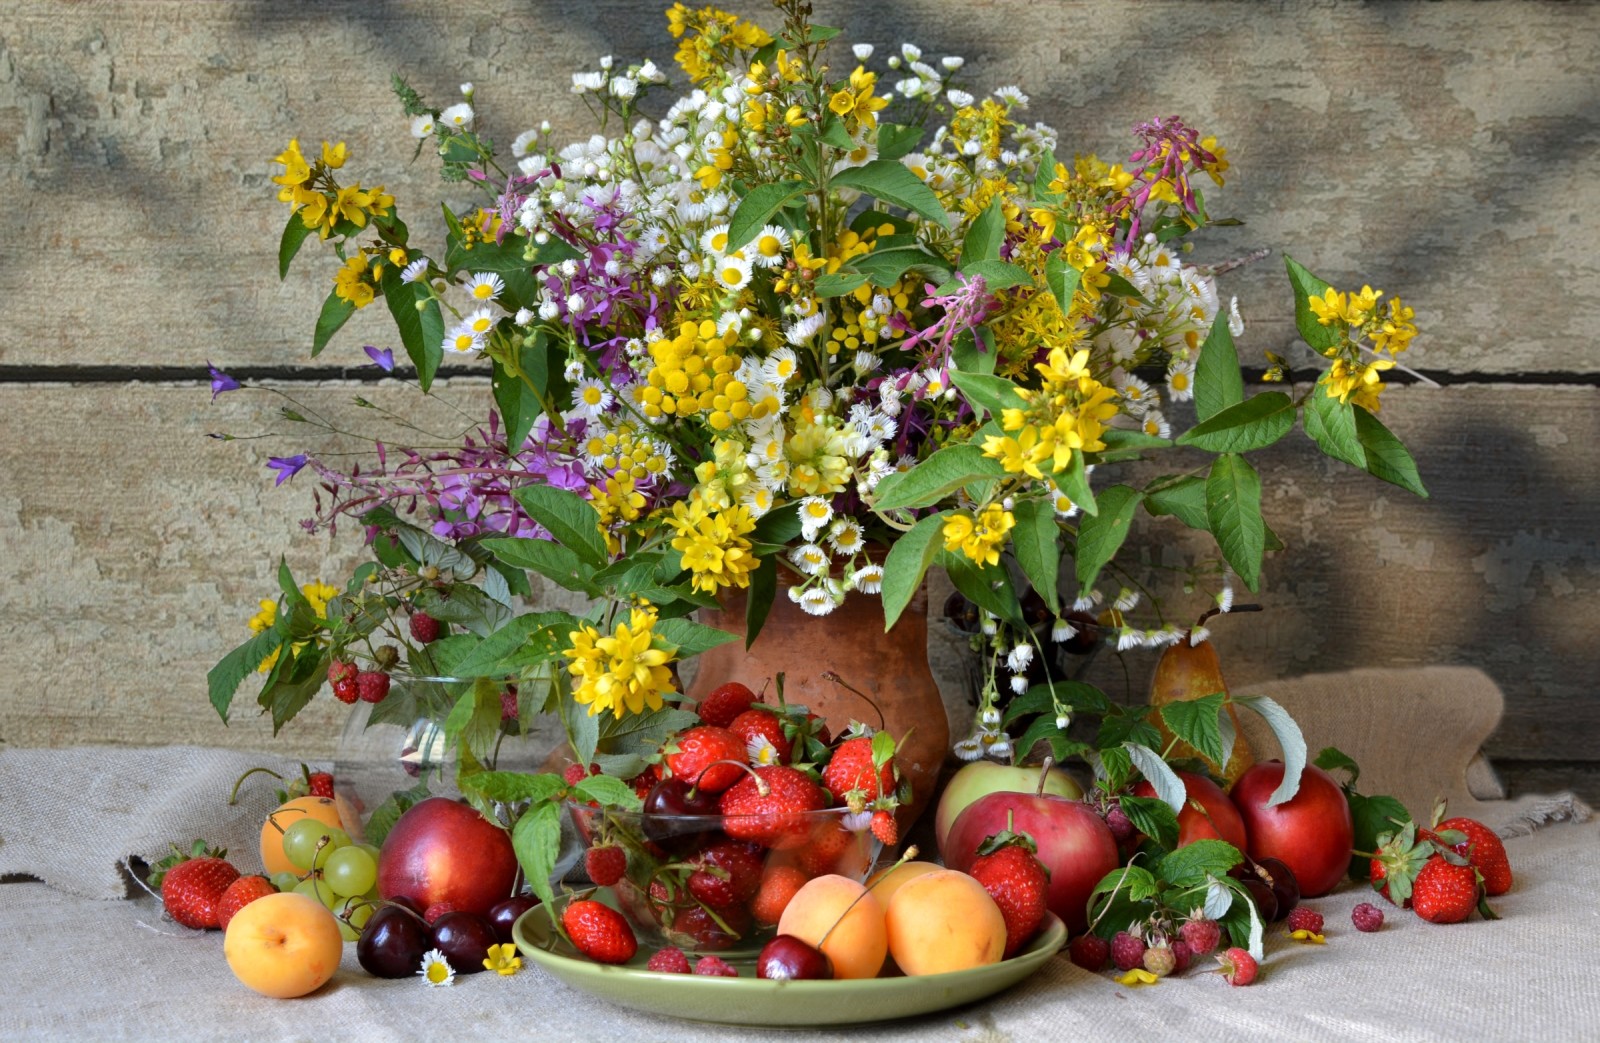 musim panas, Masih hidup, bunga-bunga, buket, buah beri, frambos, ceri, stroberi